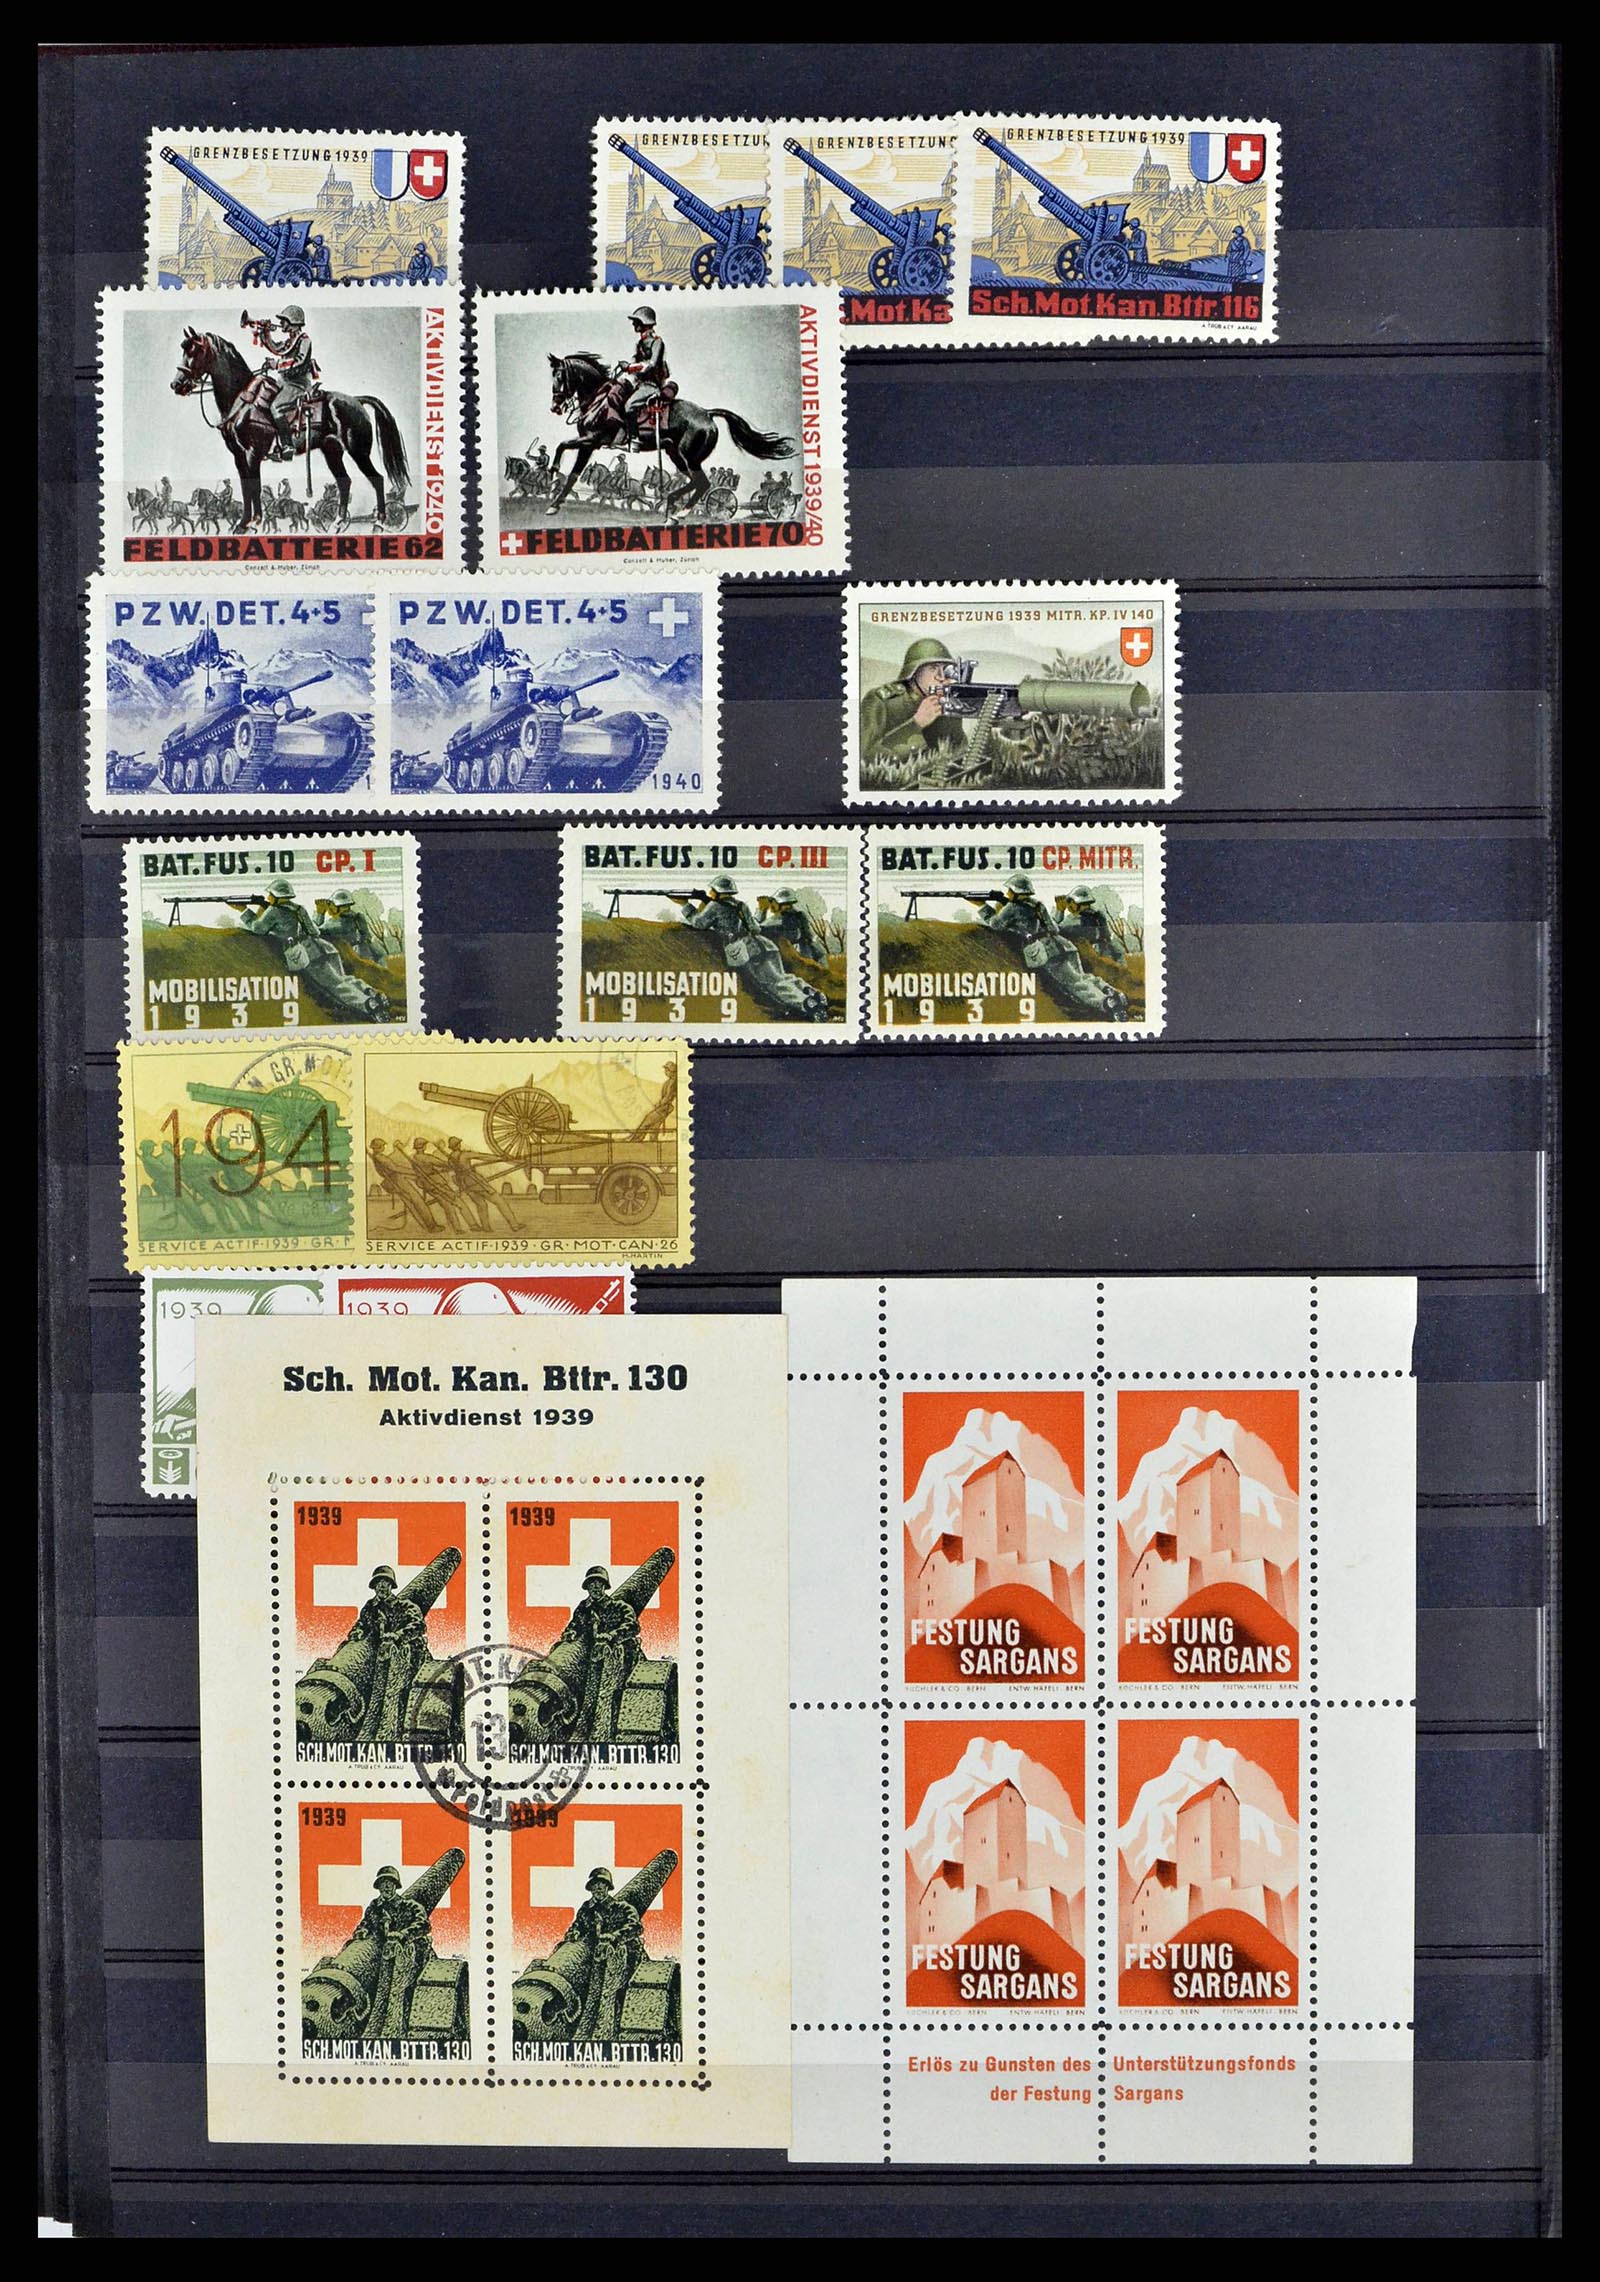 38768 0039 - Stamp collection 38768 Switzerland soldierstamps 1914-1945.